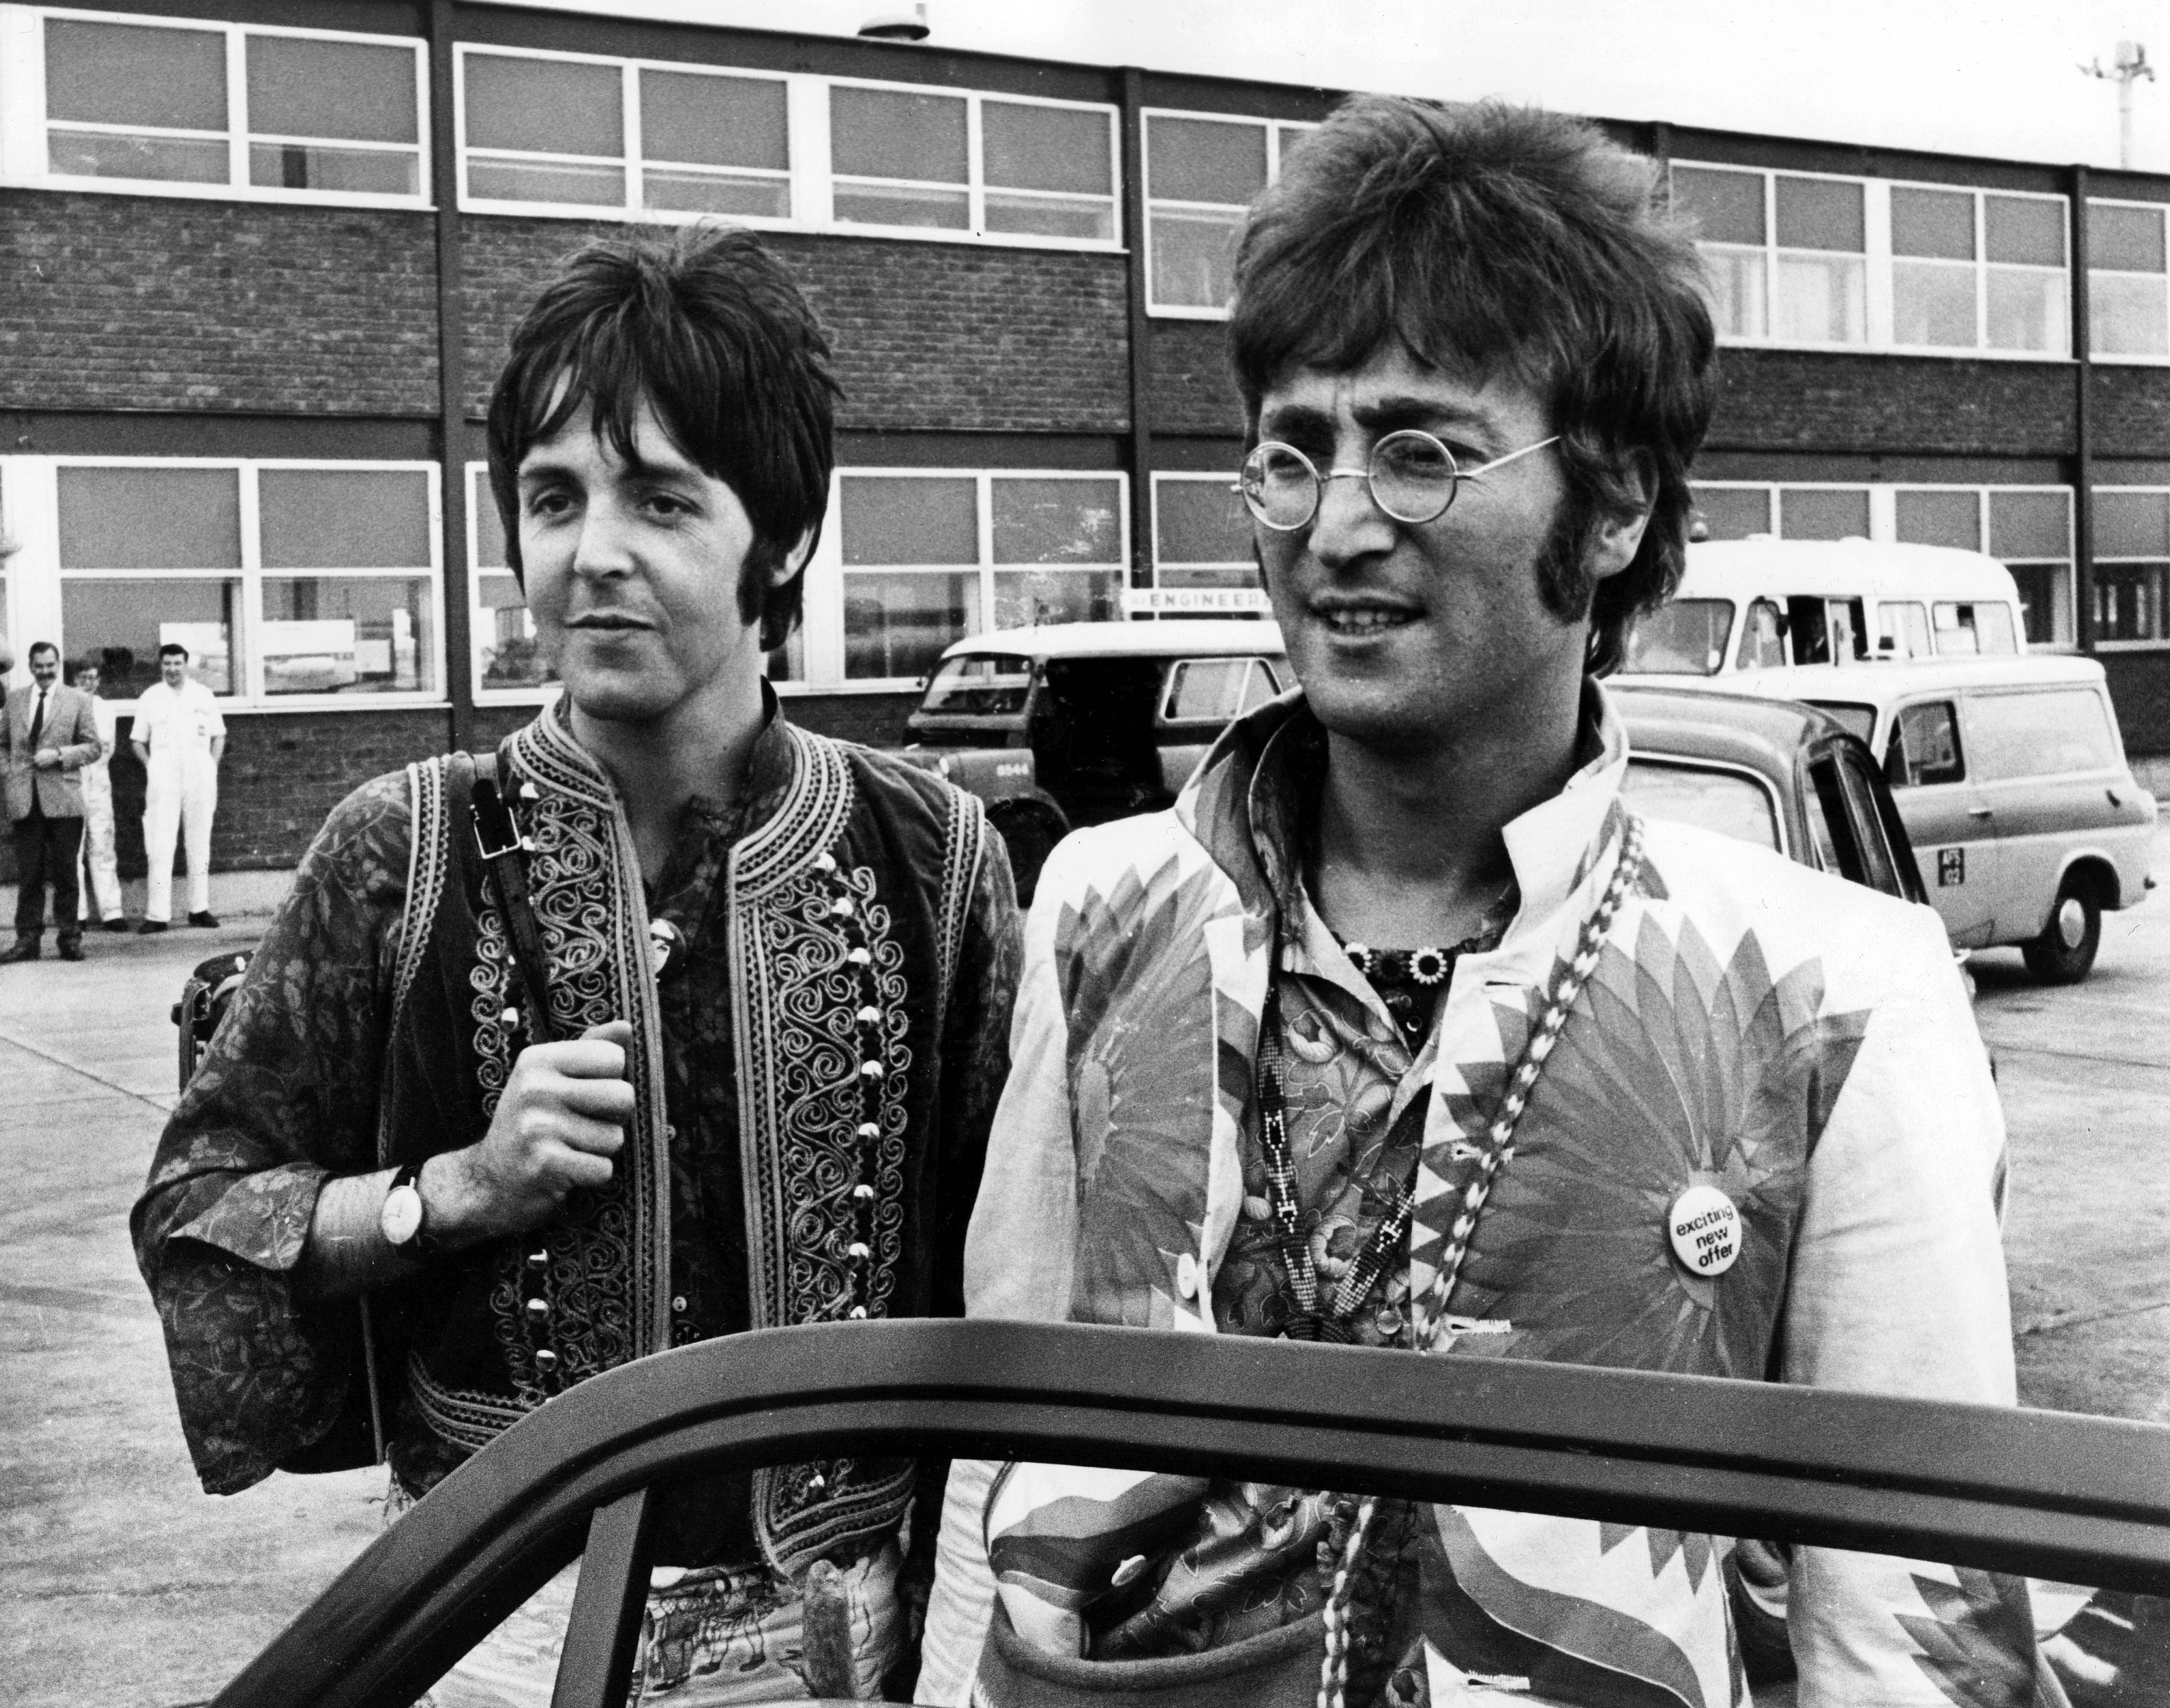 Paul McCartney and John Lennon by a car